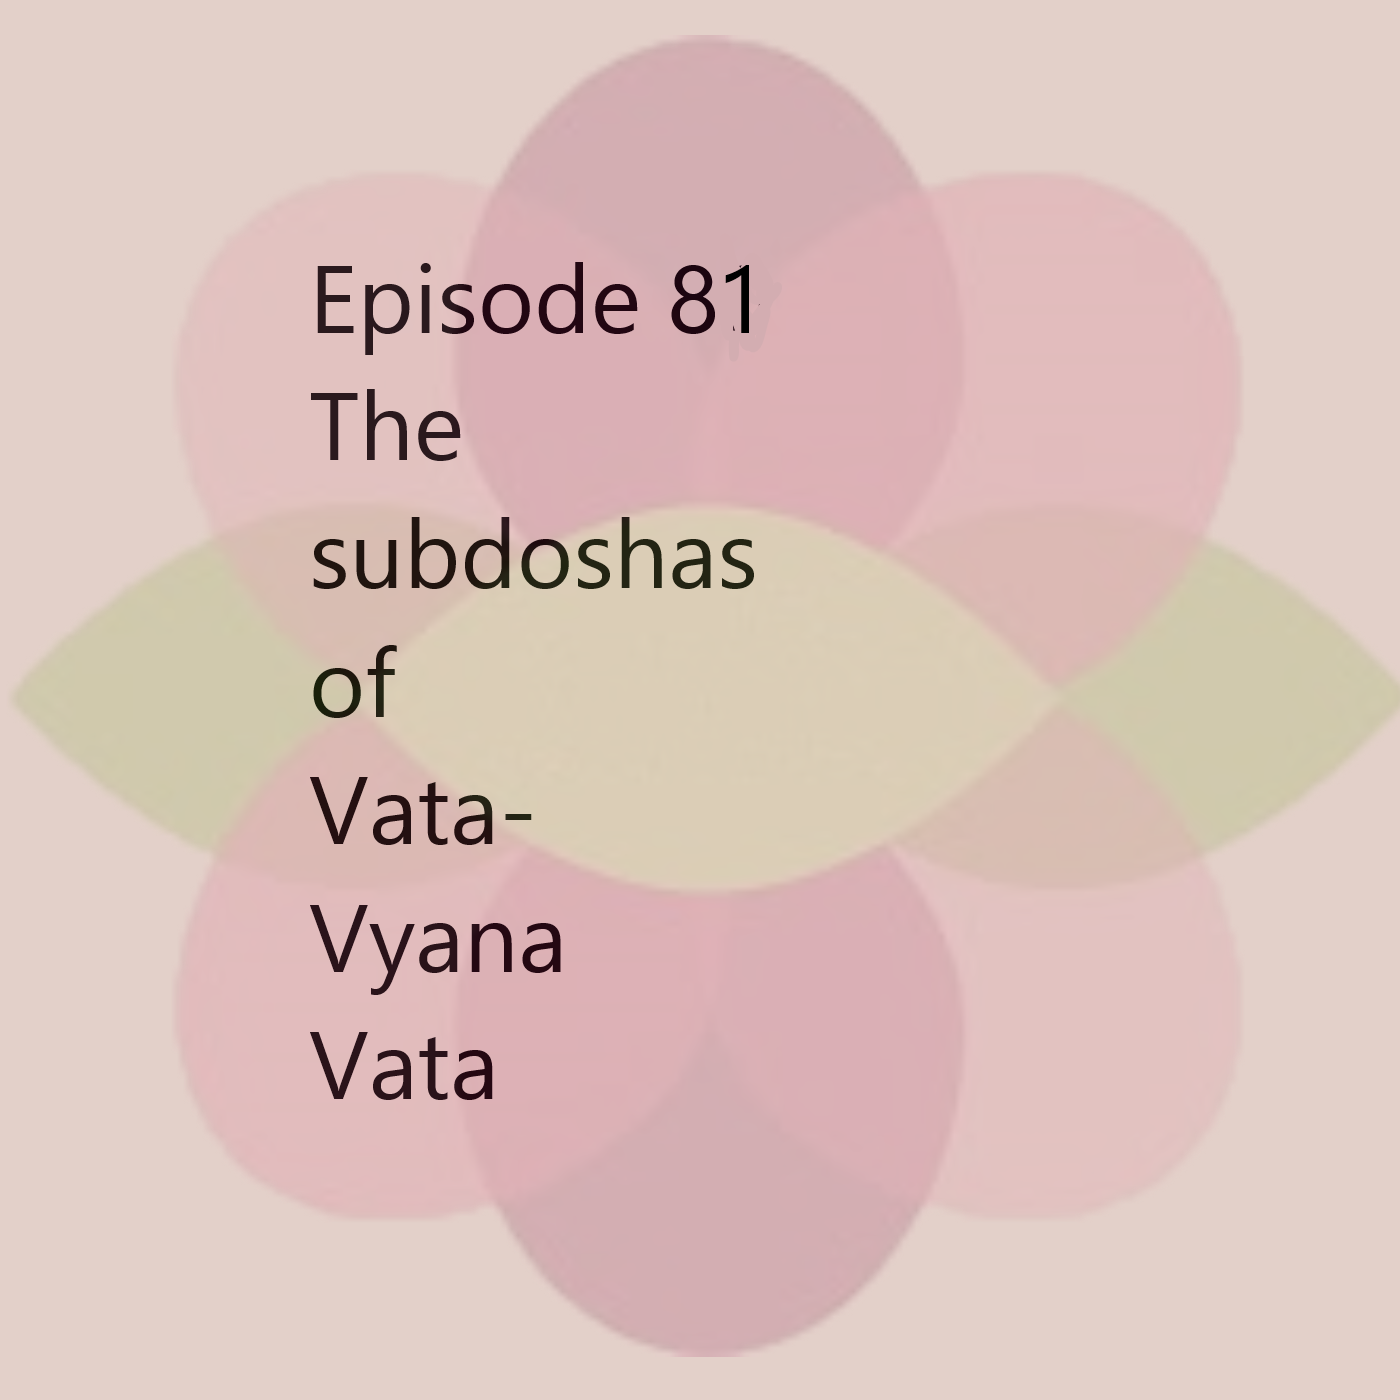 Episode 81 Vyana Vata